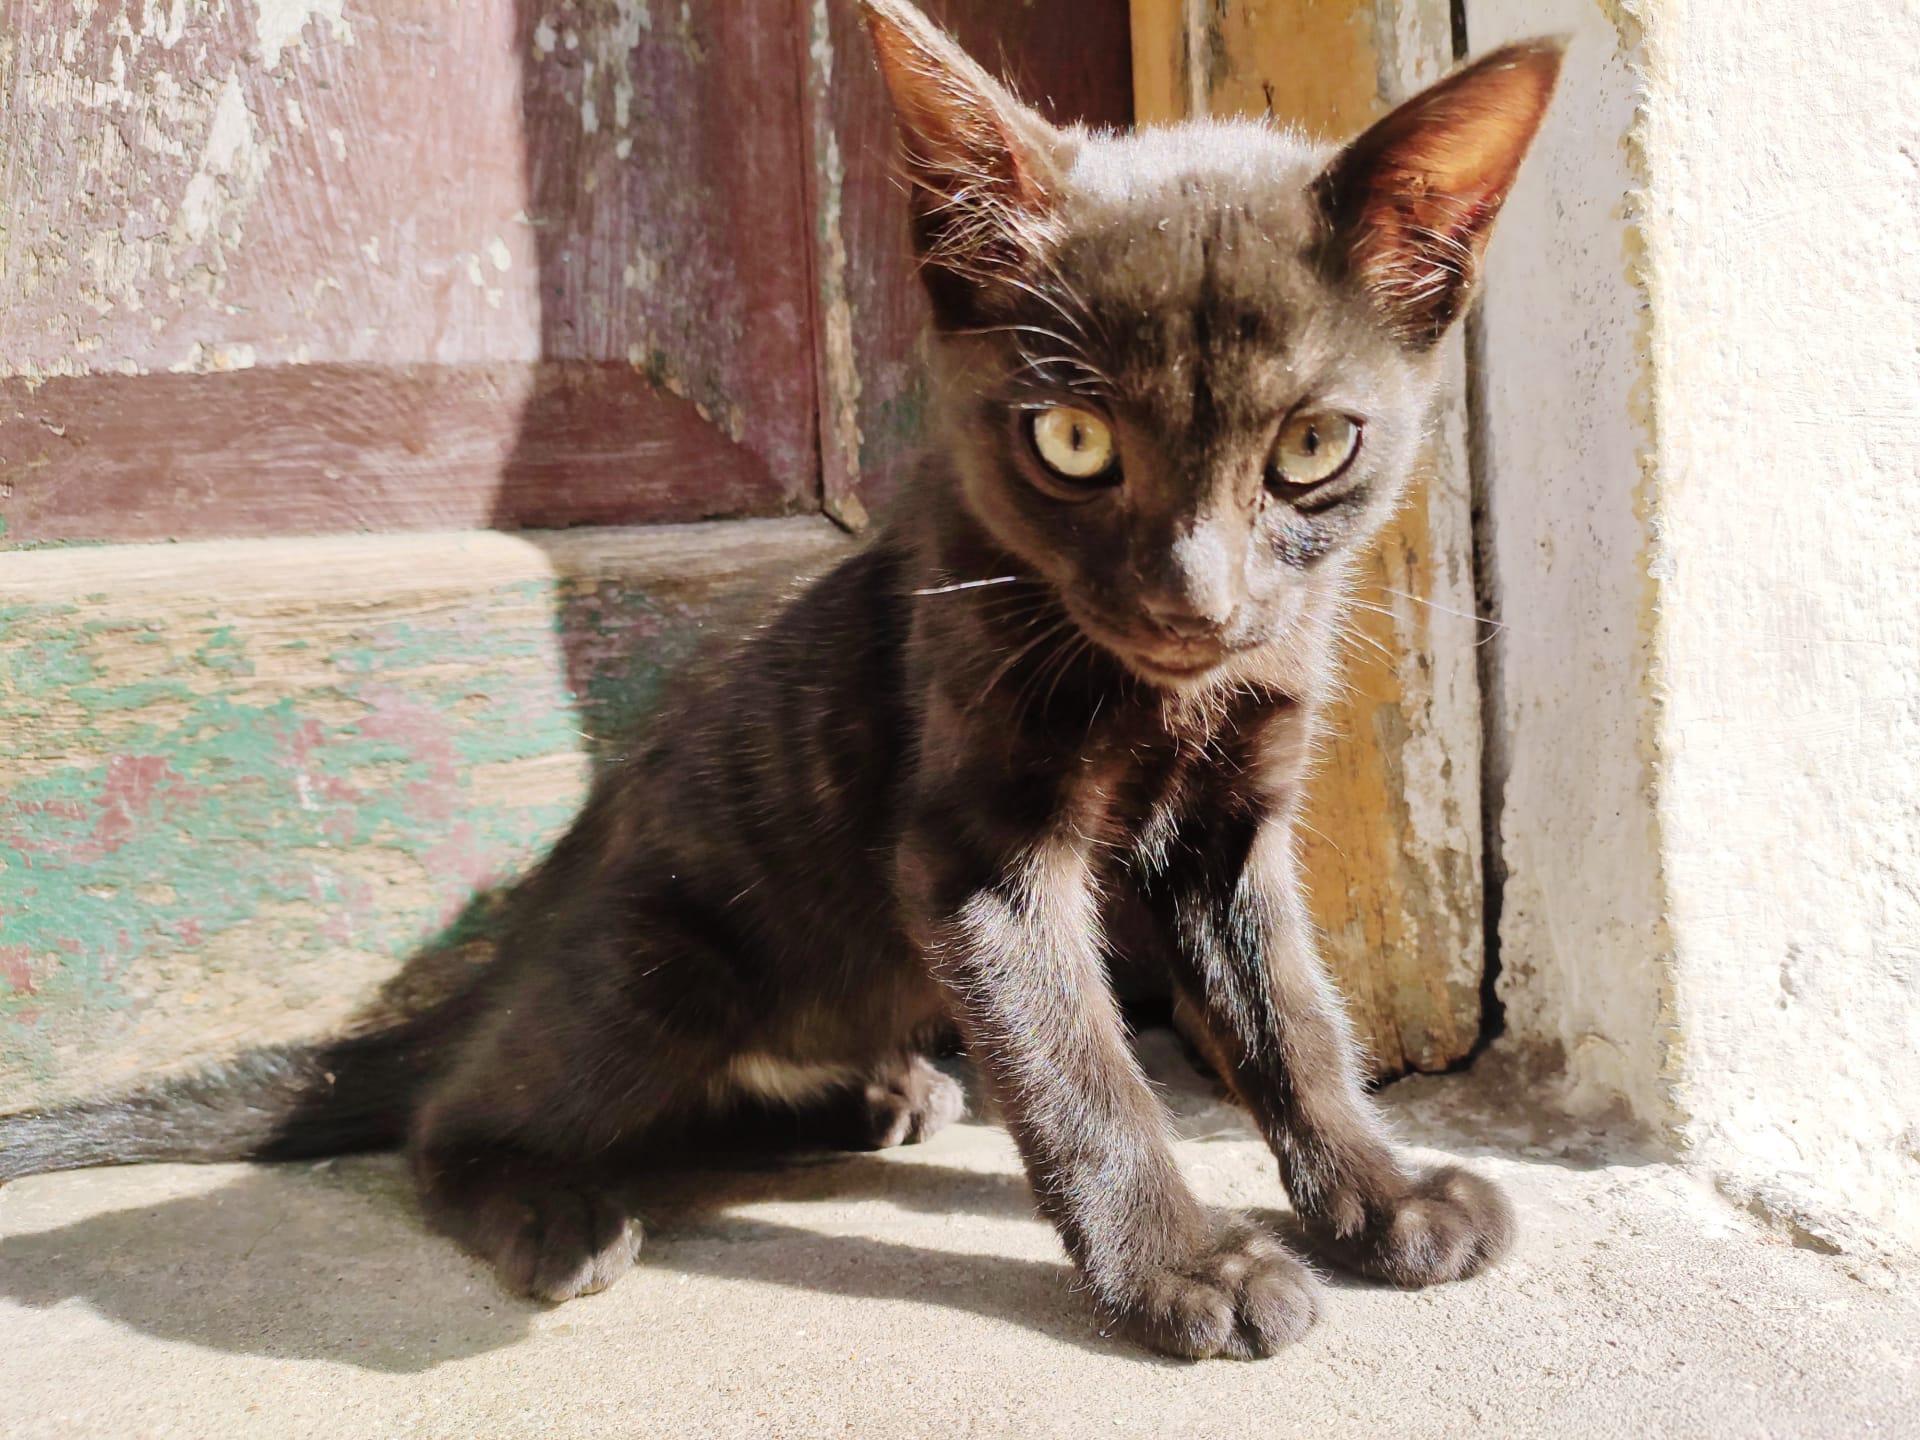 Havana cat pictures